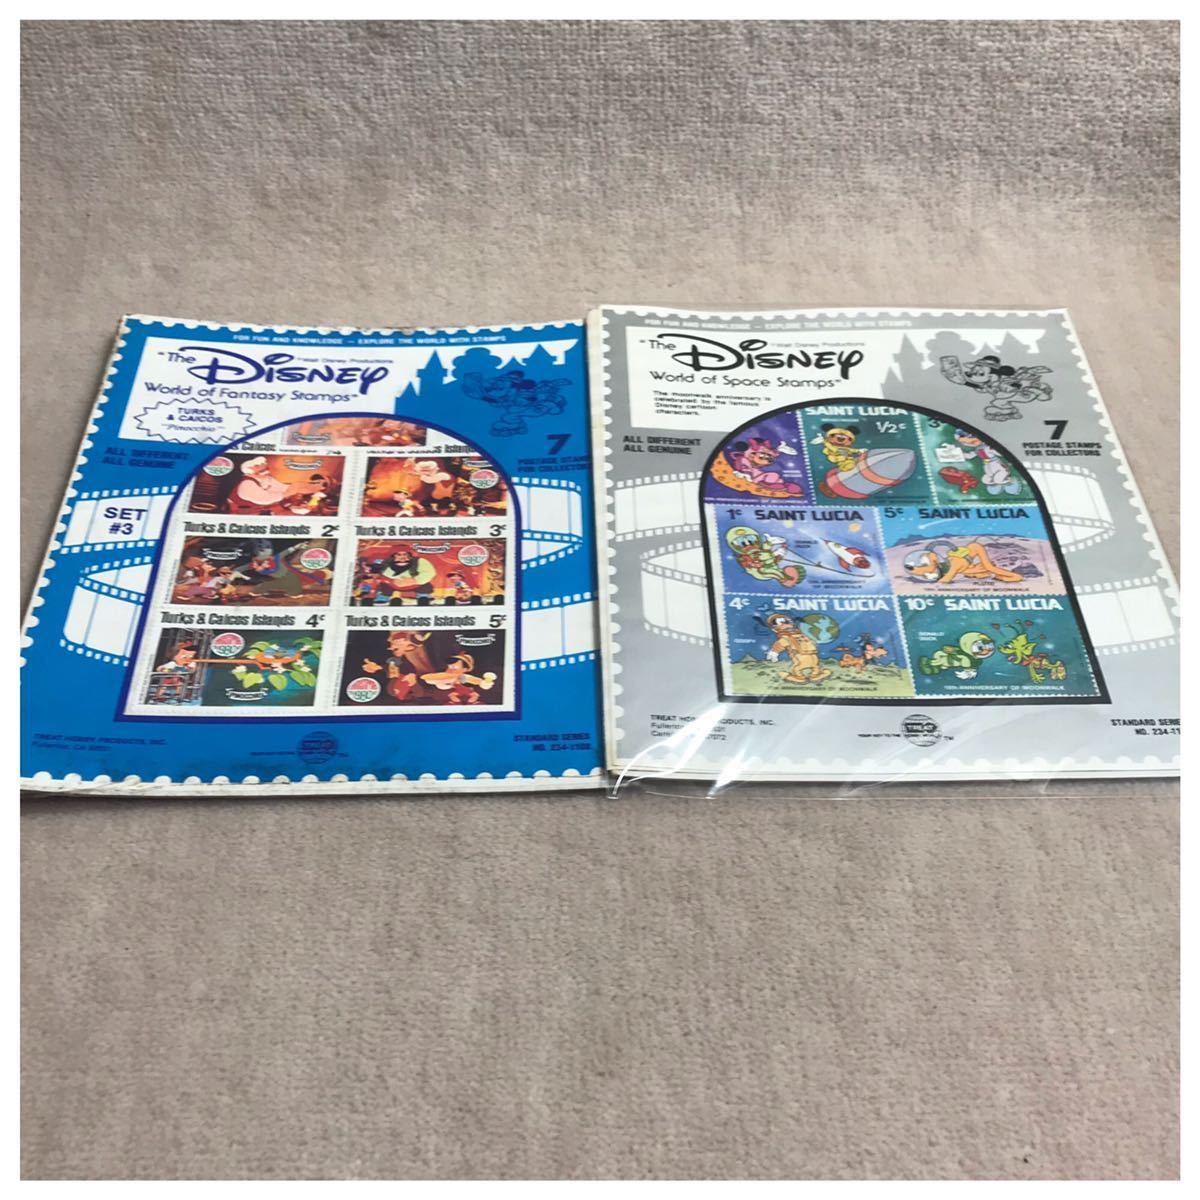 ディズニー海外切手セット(ピノキオ ・ディズニーキャラクター) 2種セット《#590DKS》_画像2